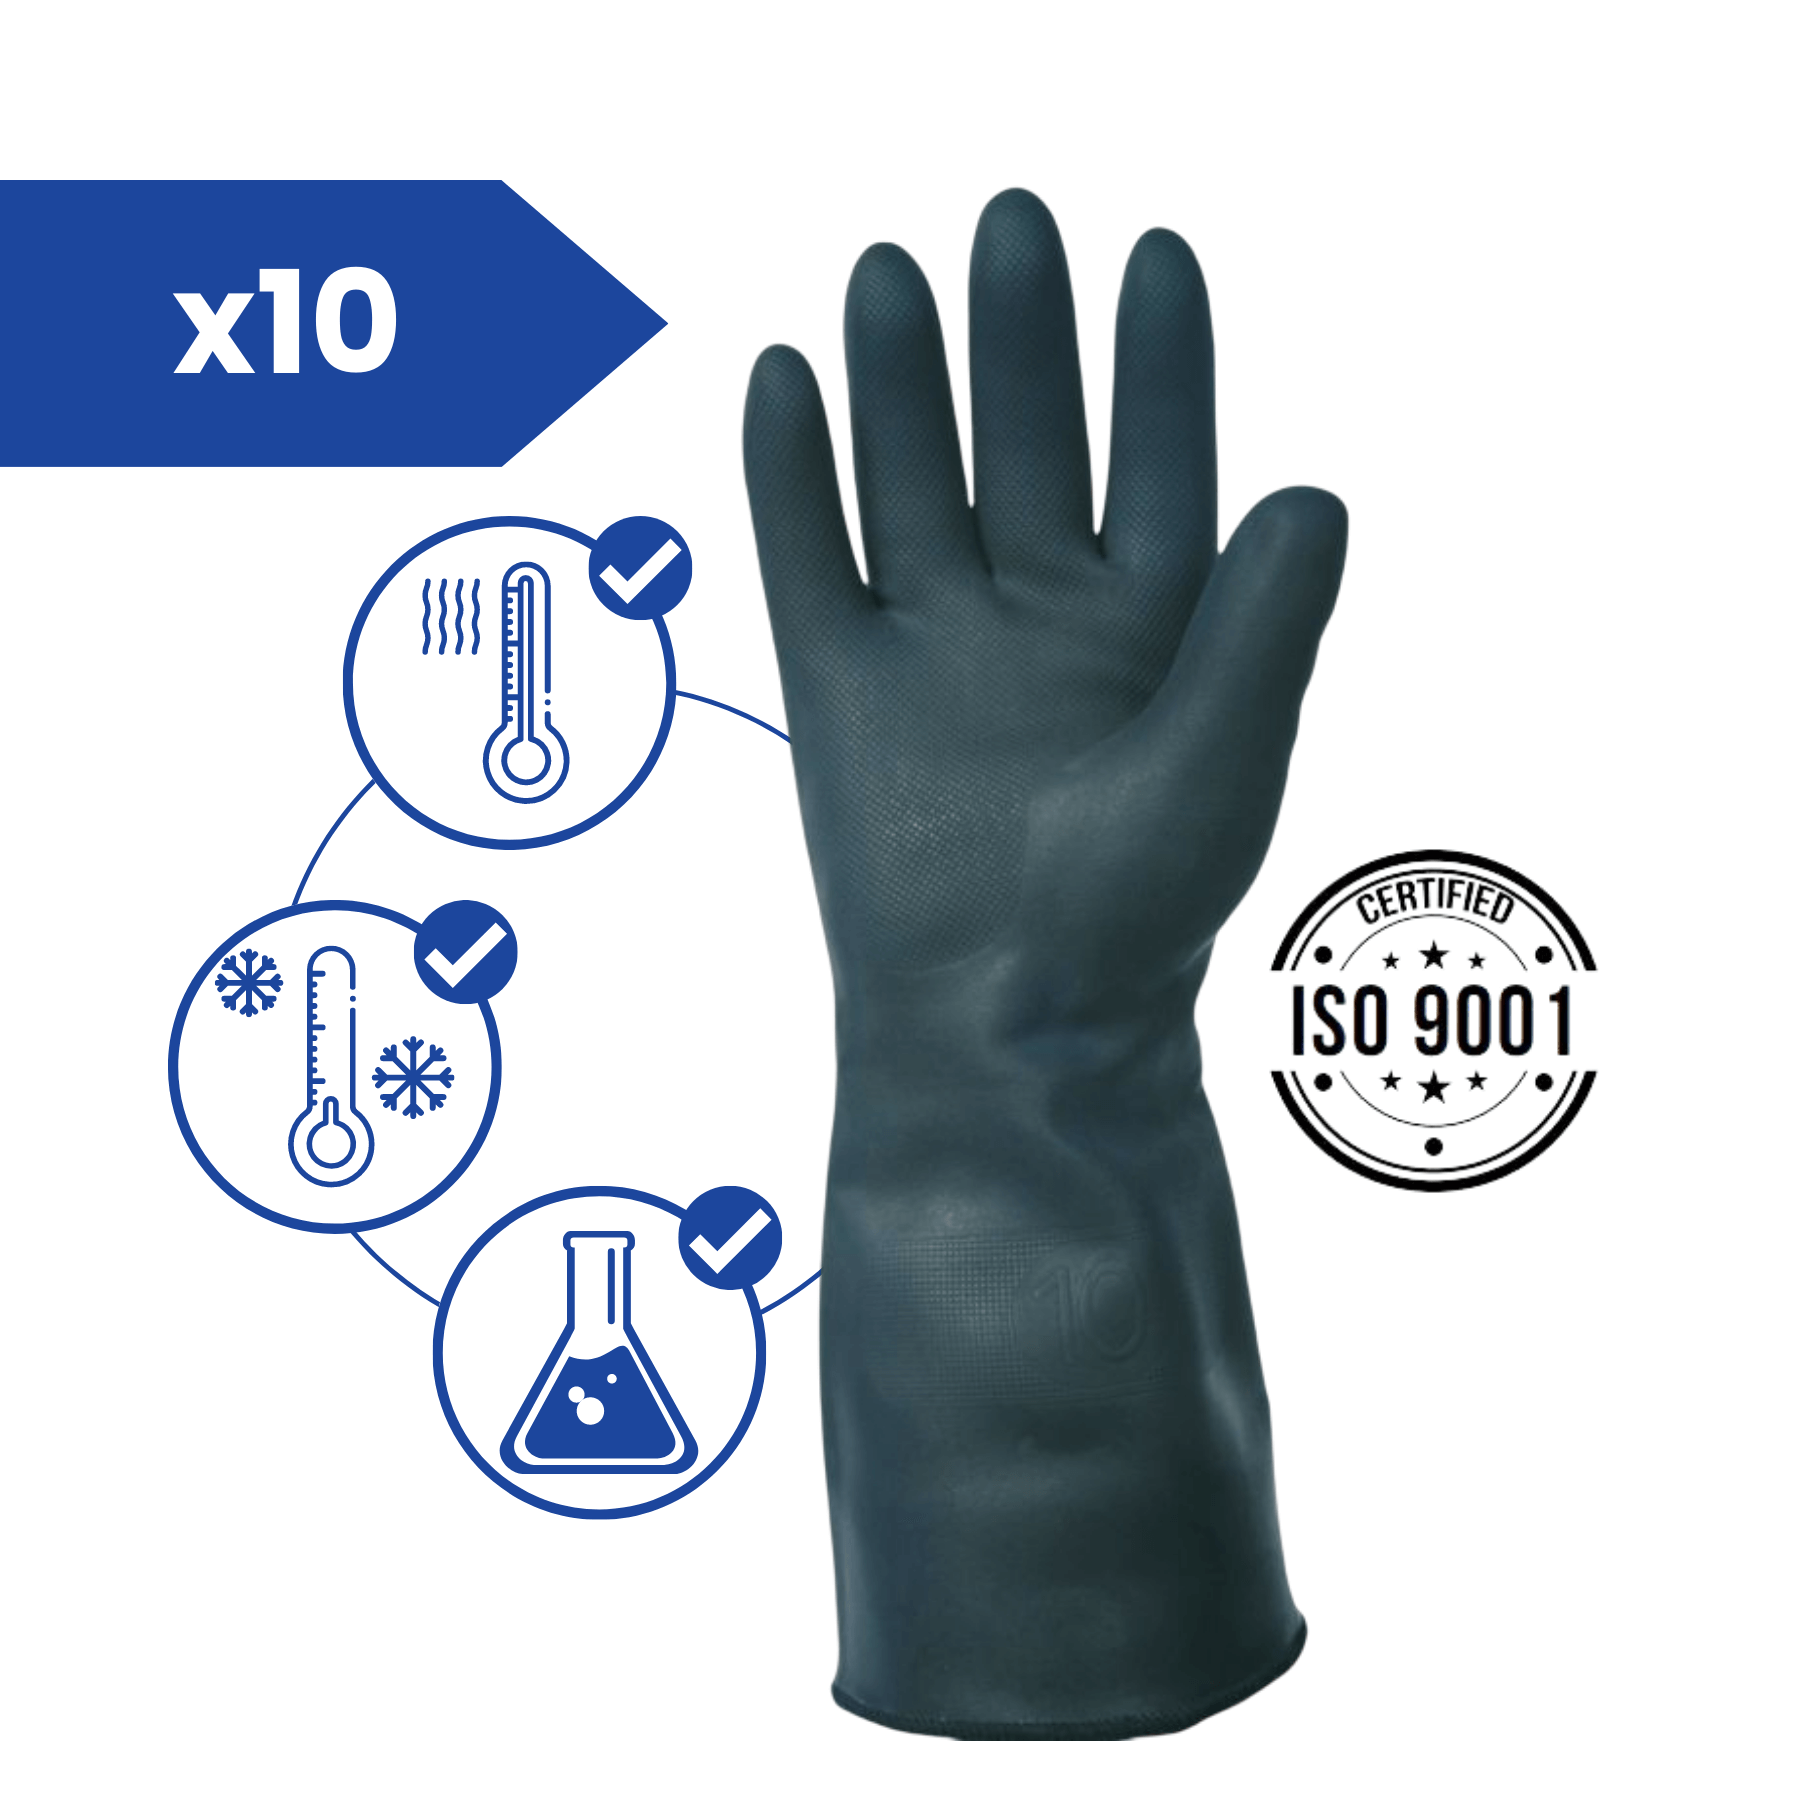 Gant anti-chaleur résistant à 100°c